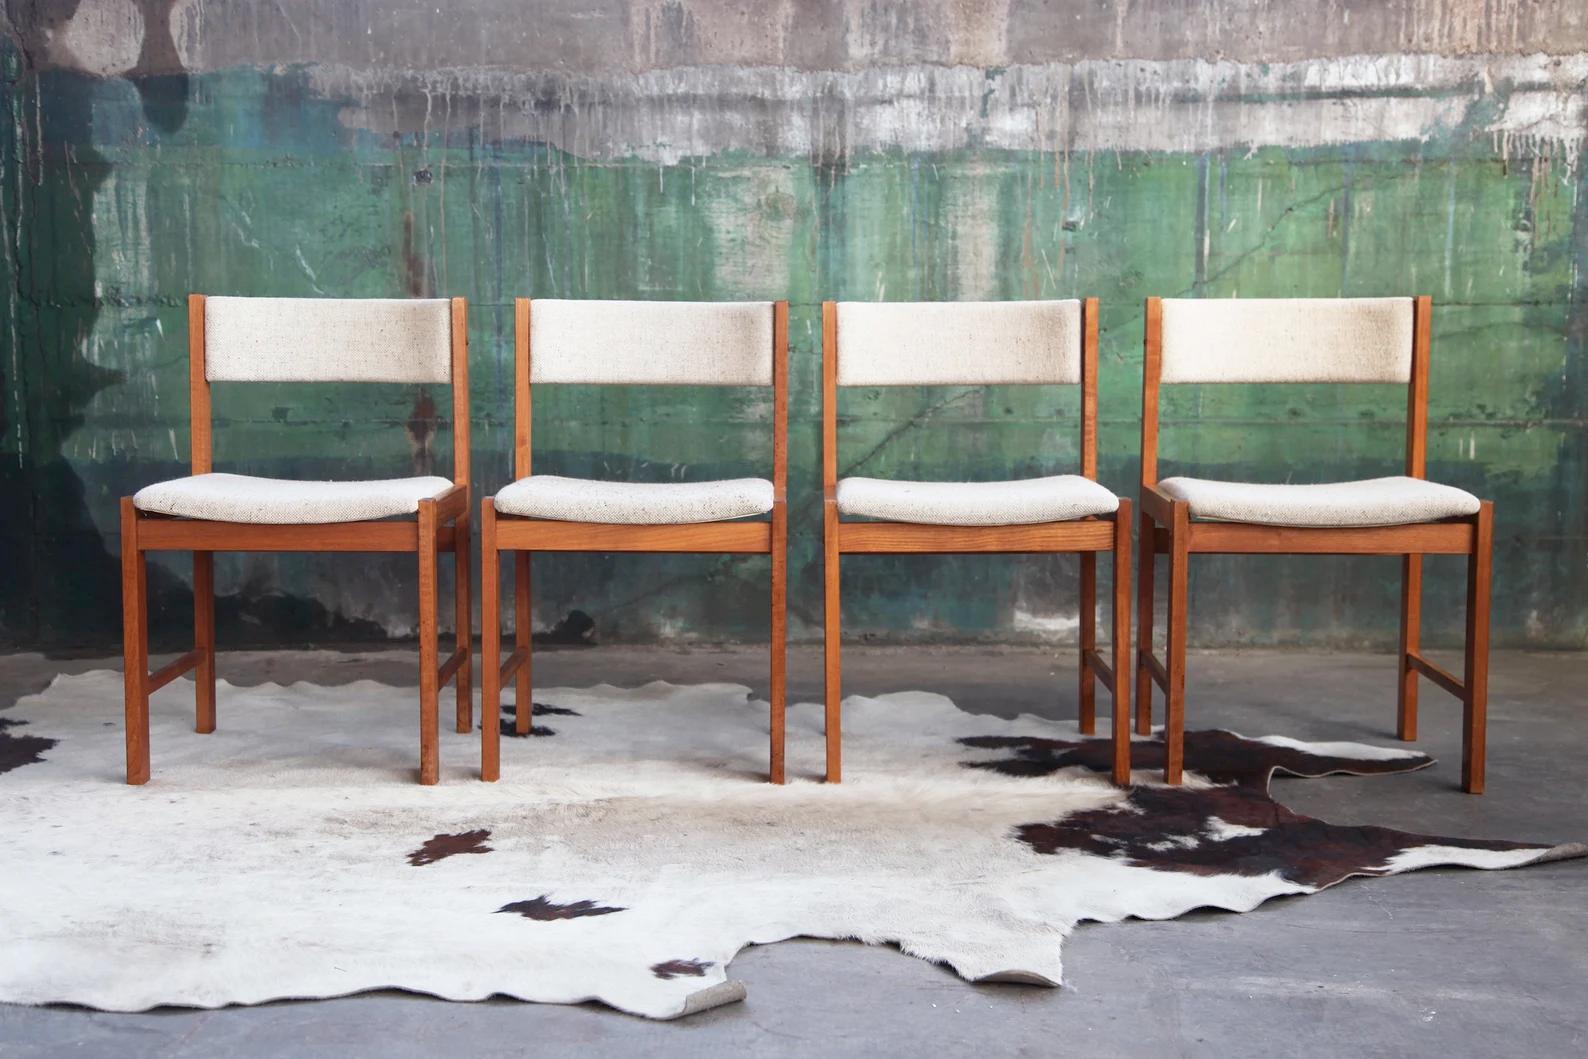 Hier haben Sie die seltene Gelegenheit, ein schönes, klassisches, robustes und schön gemachtes Set von vier dänischen Stühlen aus massivem Teakholz zu erwerben. Es handelt sich um hochgradig sammelwürdige, ikonische und sehr stilvolle Mid Century